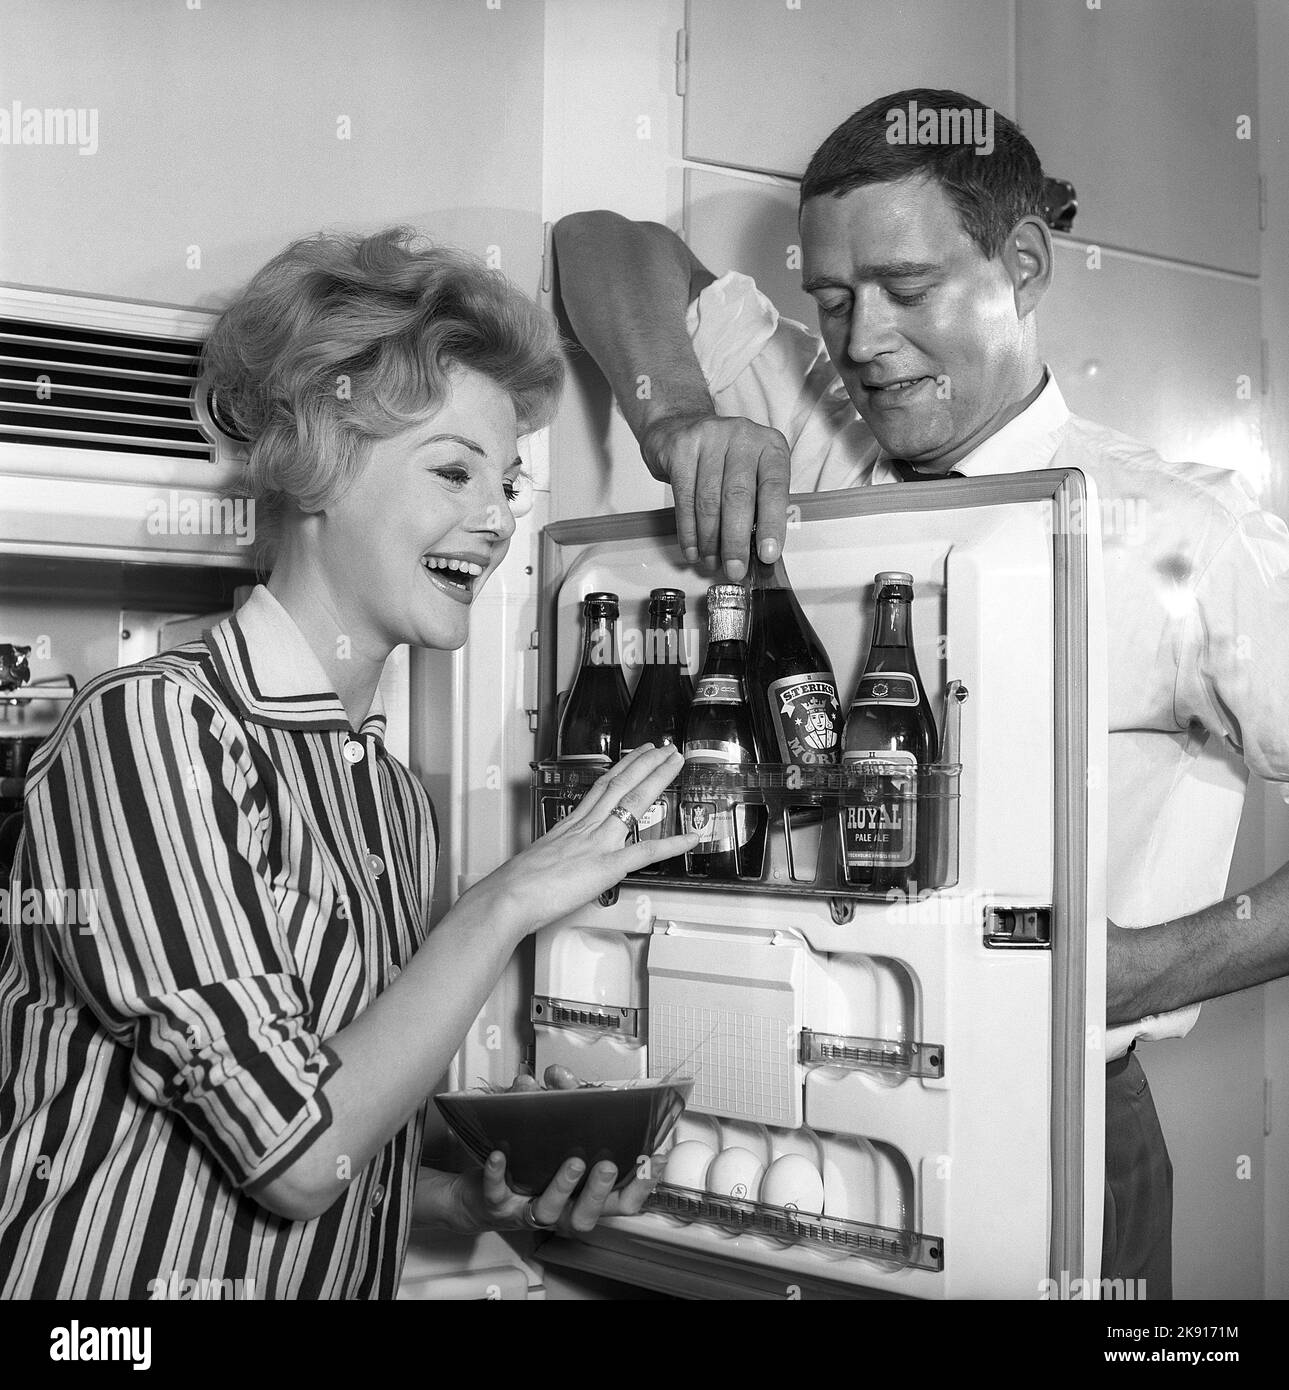 In cucina 1950s. Una coppia in cucina e nel frigorifero dove la birra è tenuta nella mensola della porta. Si vedono cinque bottiglie di birra. La signora tiene una ciotola di gamberetti. Svezia 1959. Kristoffersson rif CH77-3 Foto Stock